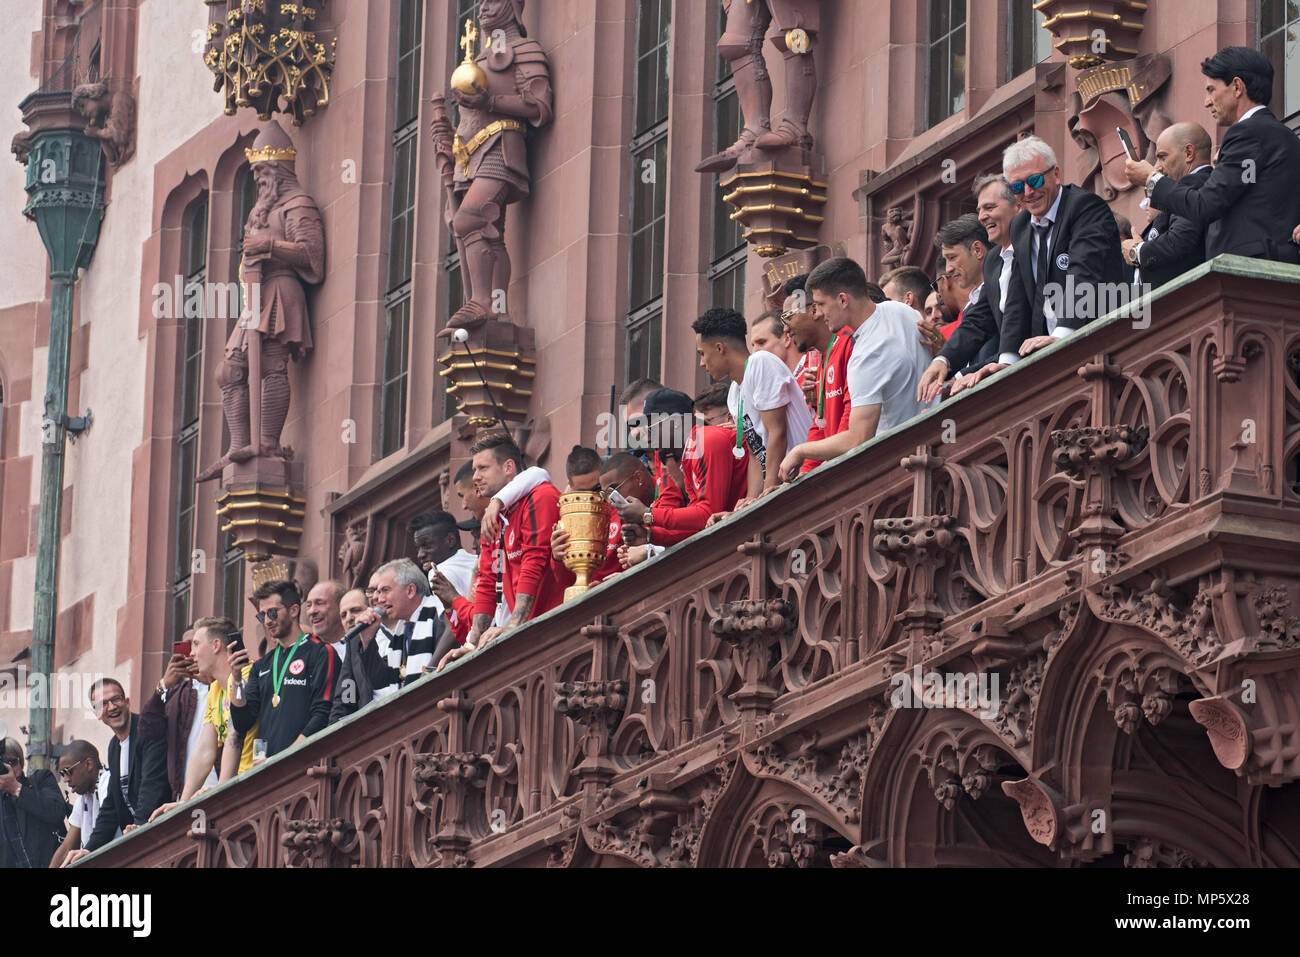 La réception de la coupe d'Allemagne vainqueur 2018 de l'Eintracht Francfort sur le balcon de l'Roemer, Frankfurt am Main, Allemagne Banque D'Images